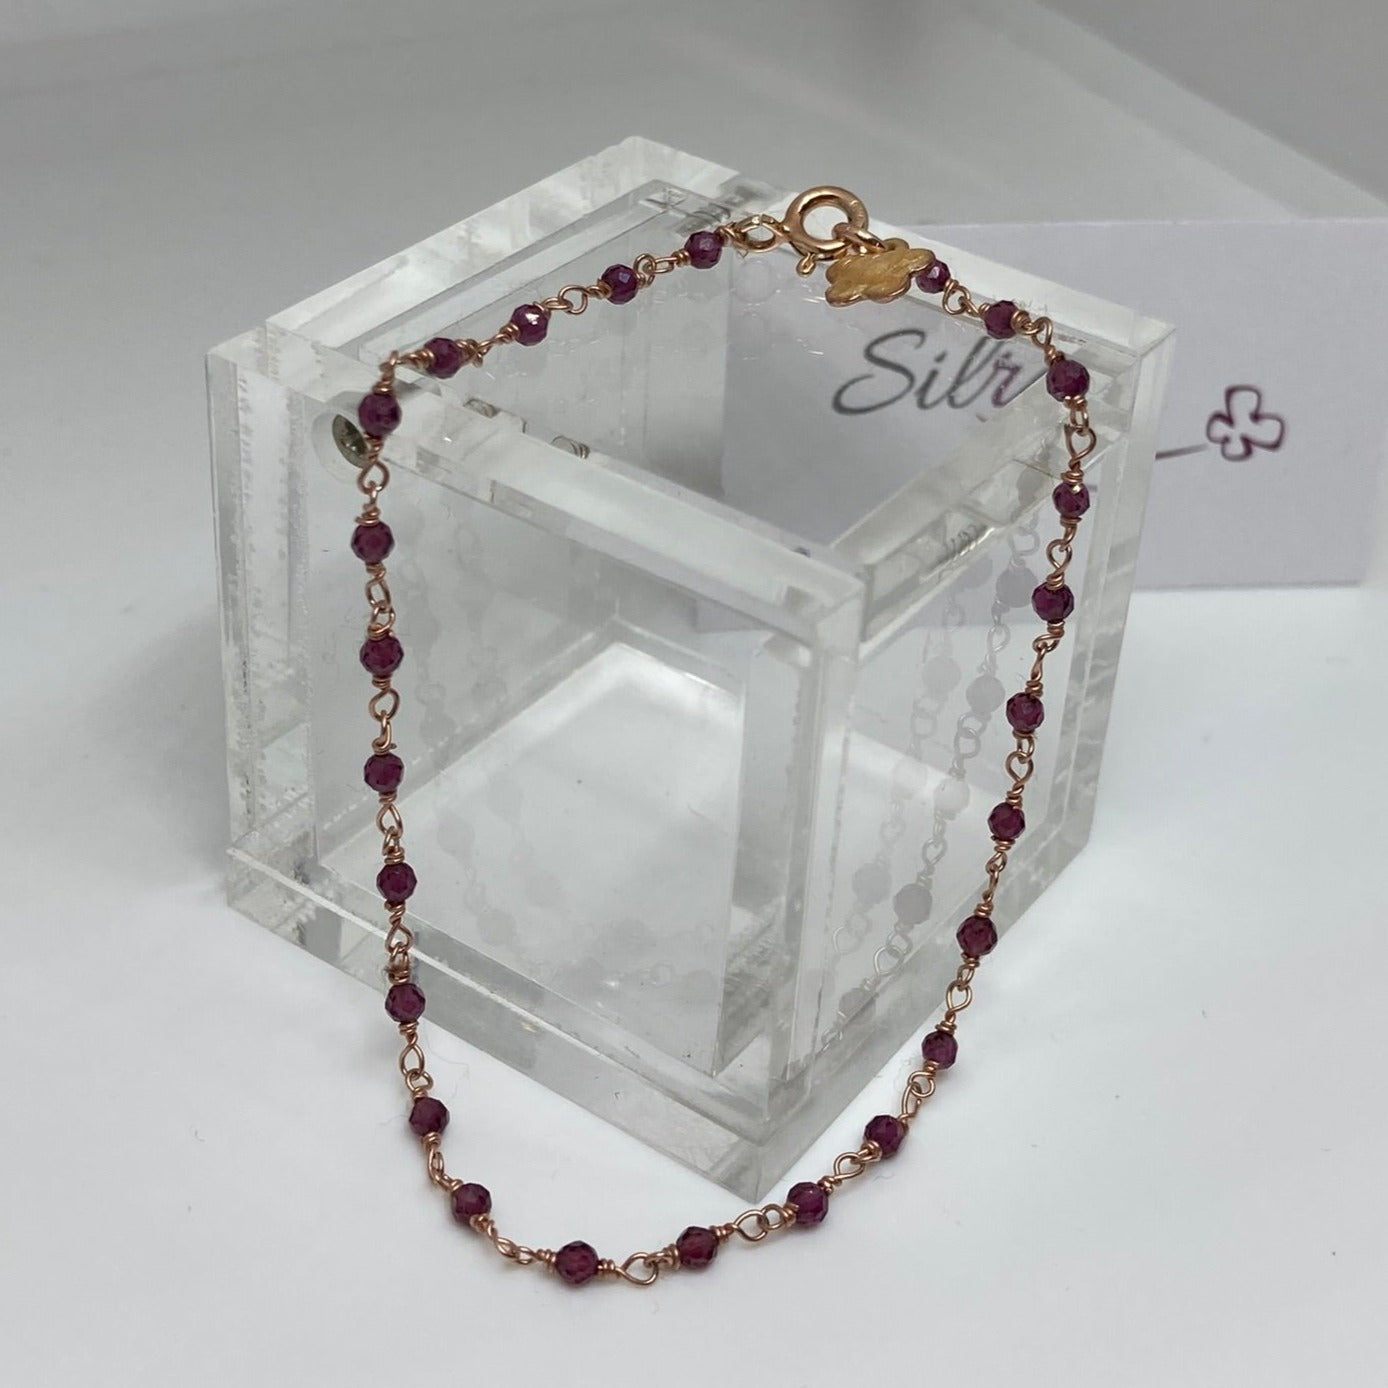 Braccialetto 'nodo orefice' in Ag. 925 rosato, con pietre preziose